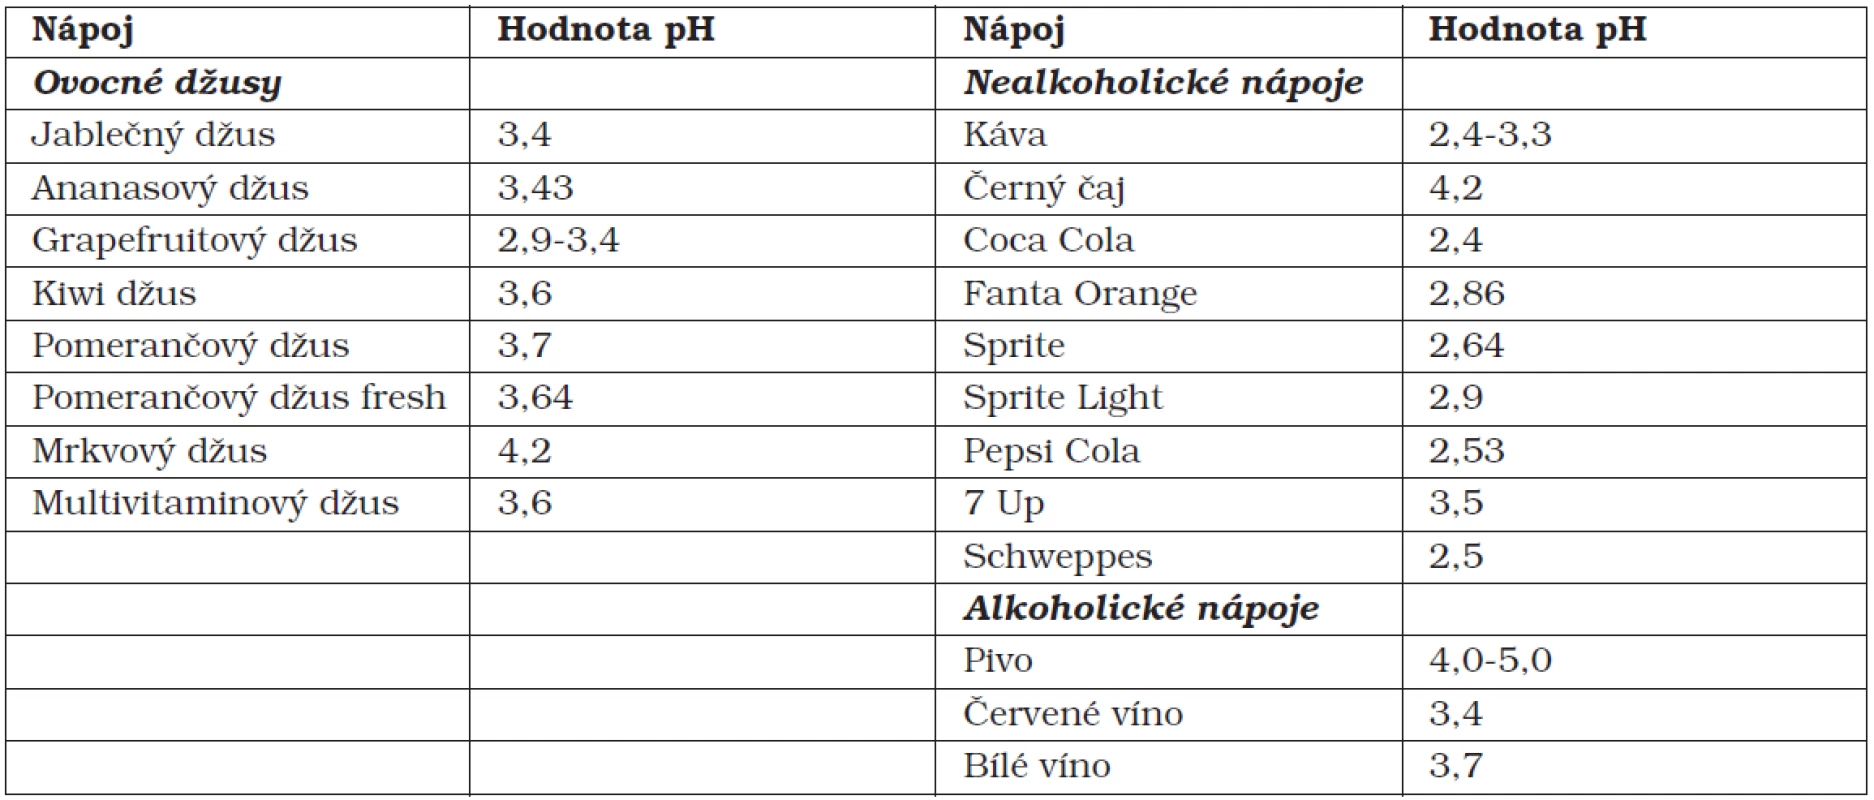 Hodnoty pH nejčastěji konzumovaných nápojů [7, 9, 12, 13]